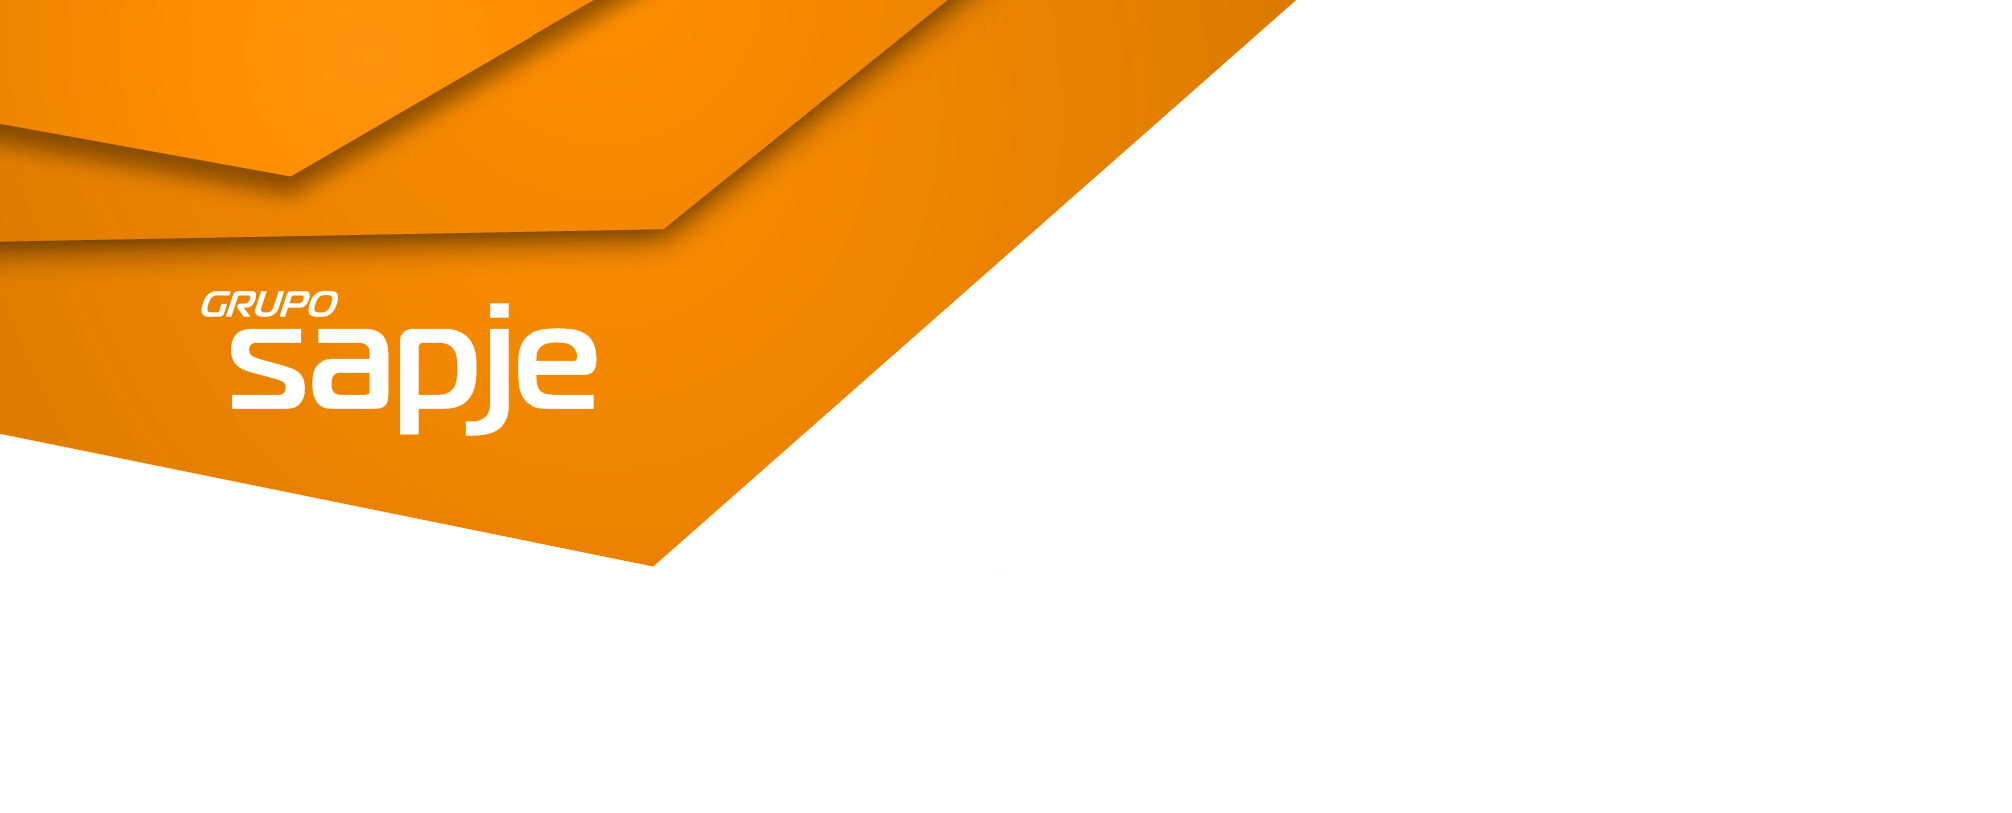 Cabecera con logo del grupo SAPJE naranja